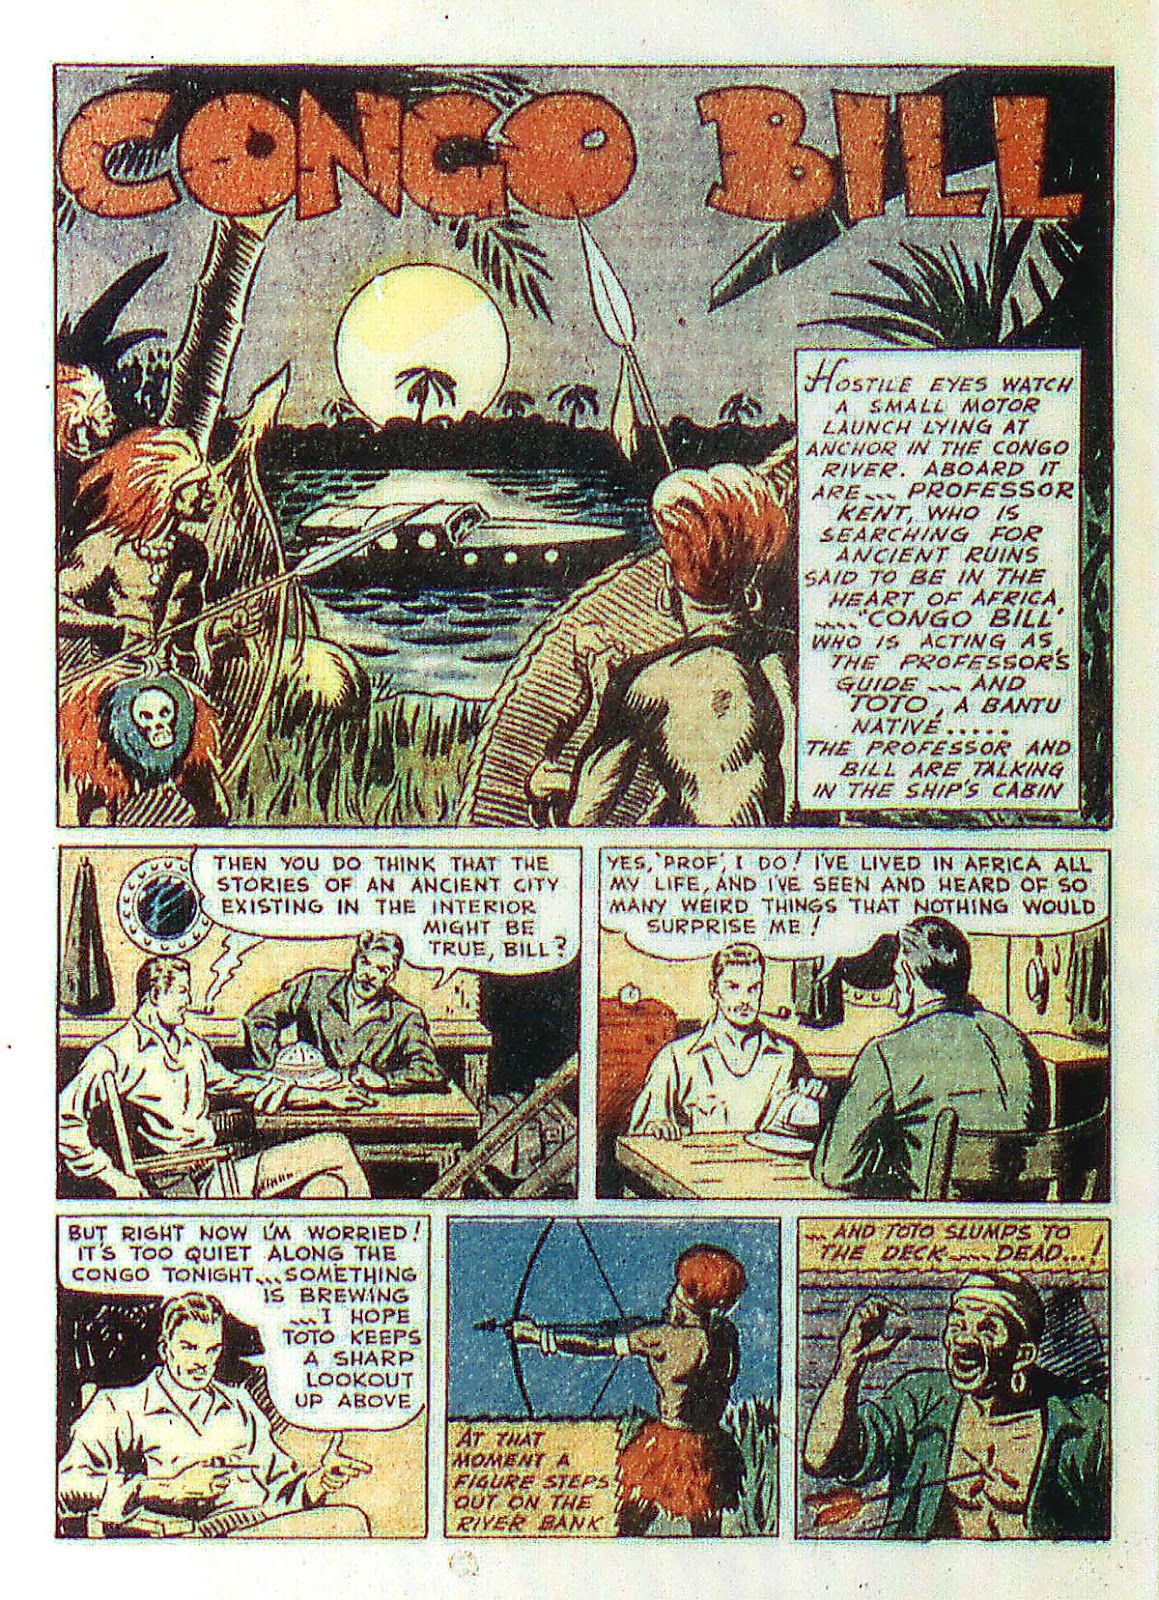 Página de More Fun Comics en la que vemos la presentación de Congo Bill, con el nombre bien grande y viñetas de una aventura africana clásica.